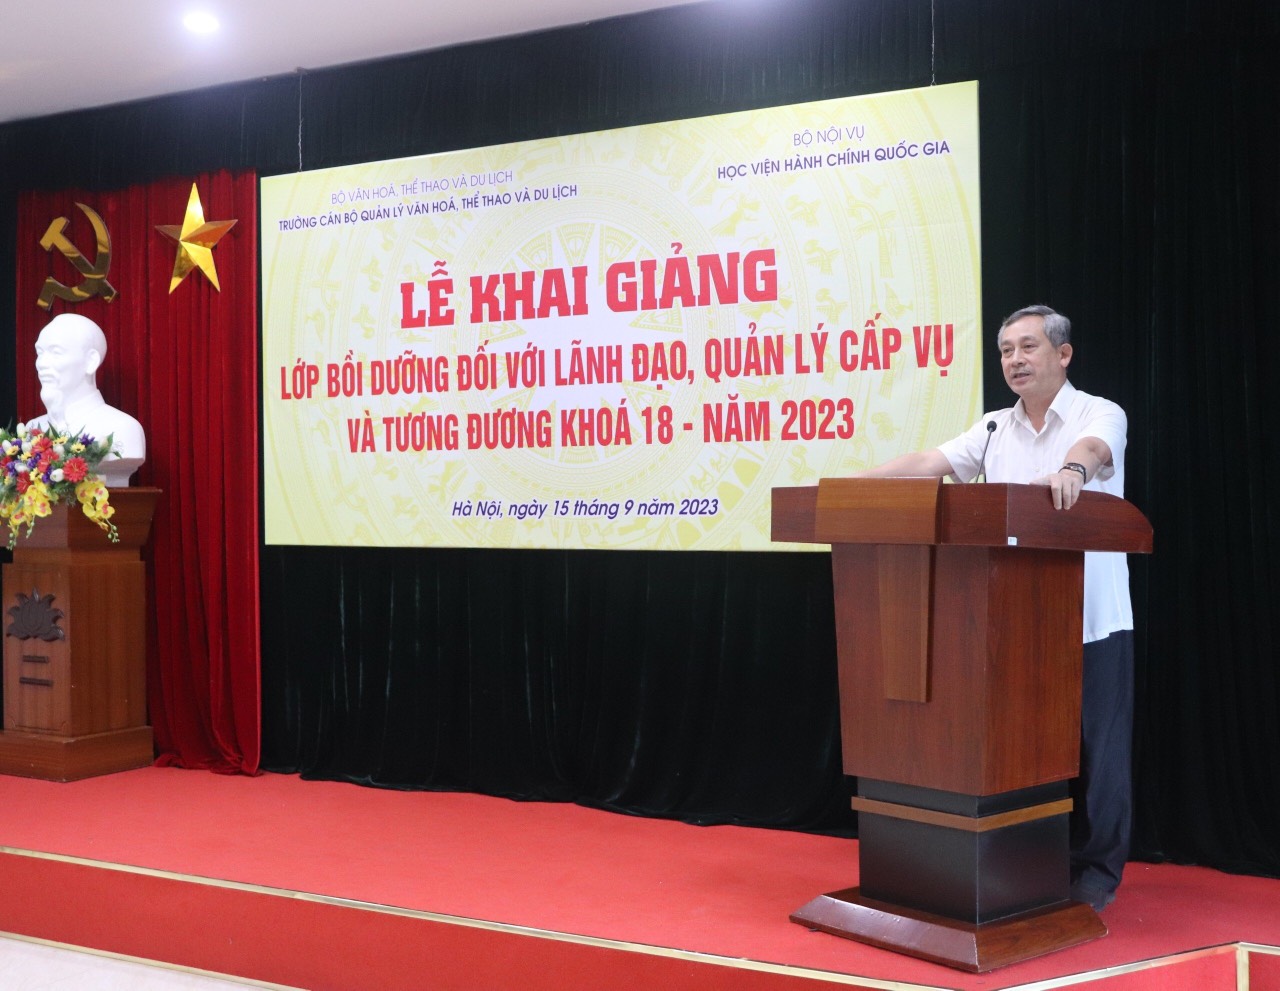 3. TS. Nguyễn Quang Hùng - Hiệu trưởng Trường Cán bộ quản lý văn hóa, thể thao và du lịch phát biểu